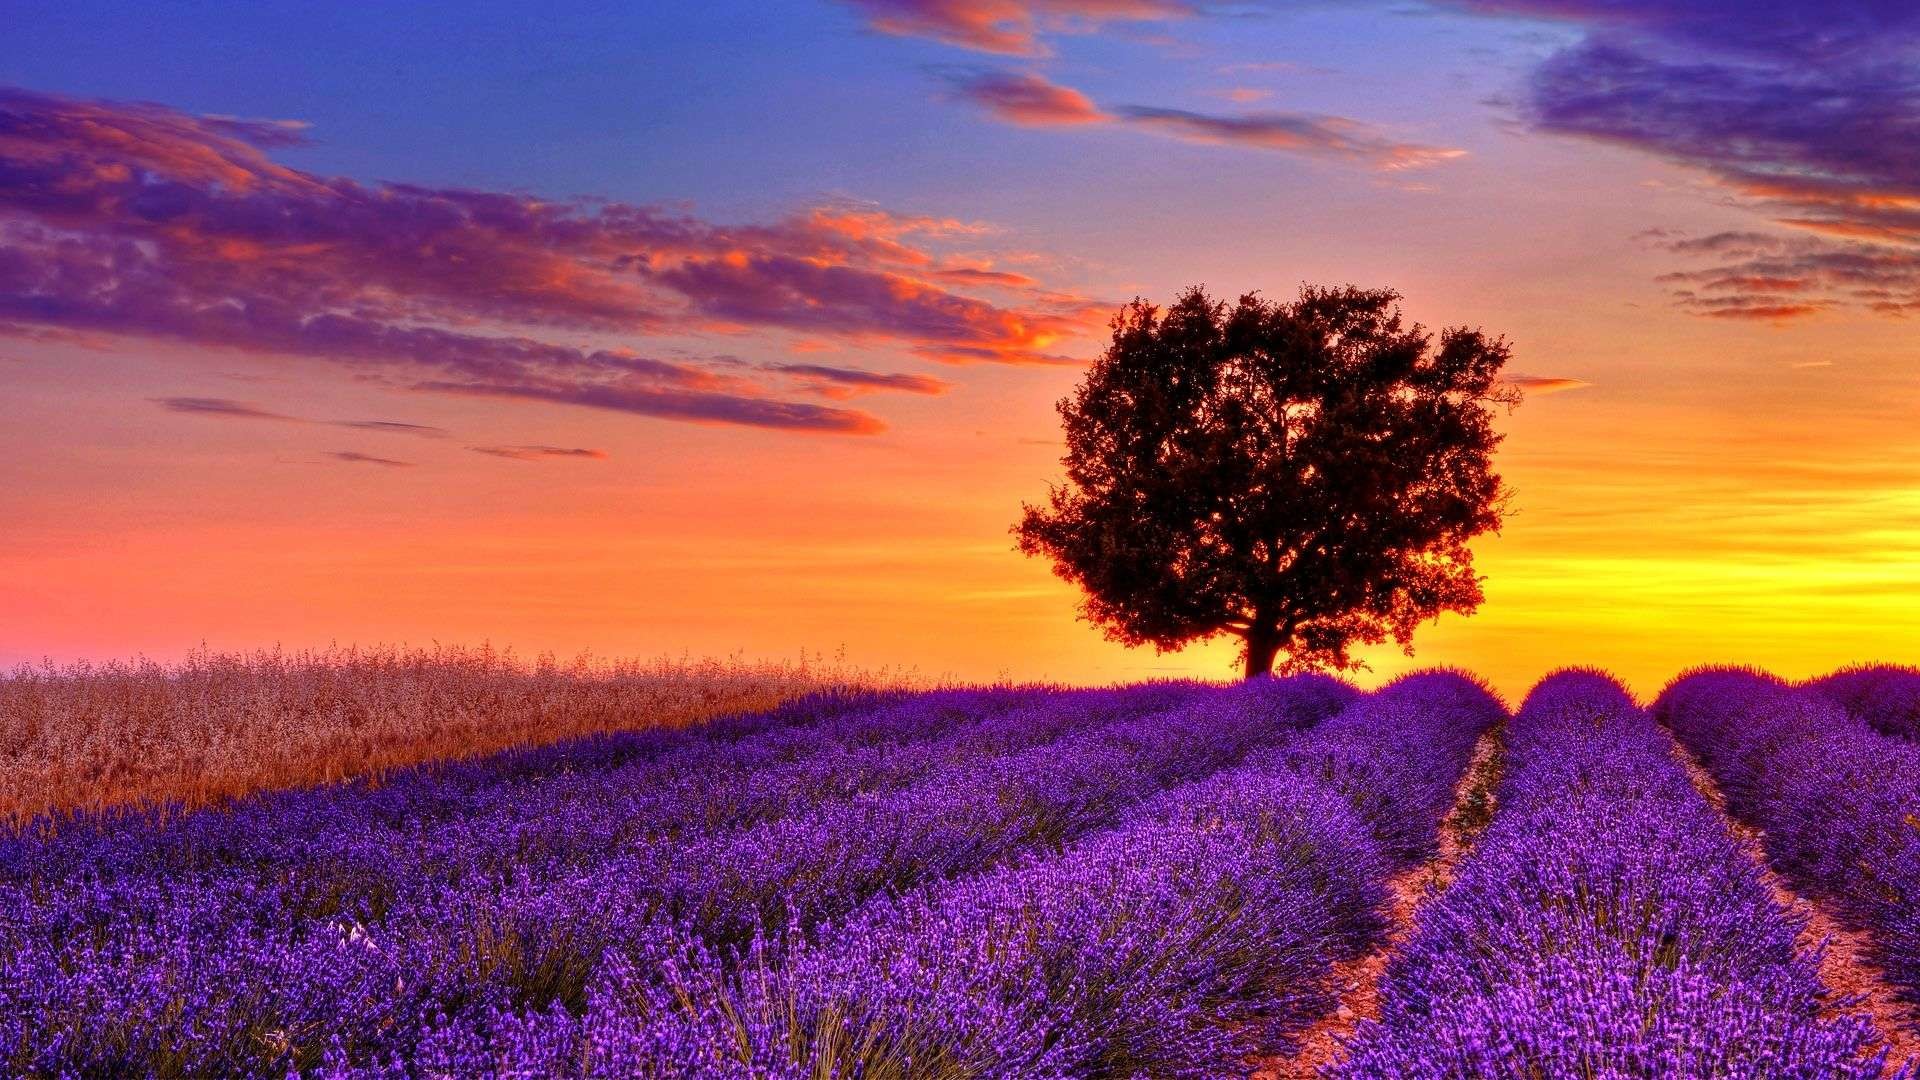 1920x1080 19 Oct lavender-flower-field-sunset-high-resolution-wallpaper-for- desktop-background-download-lavender-images-free